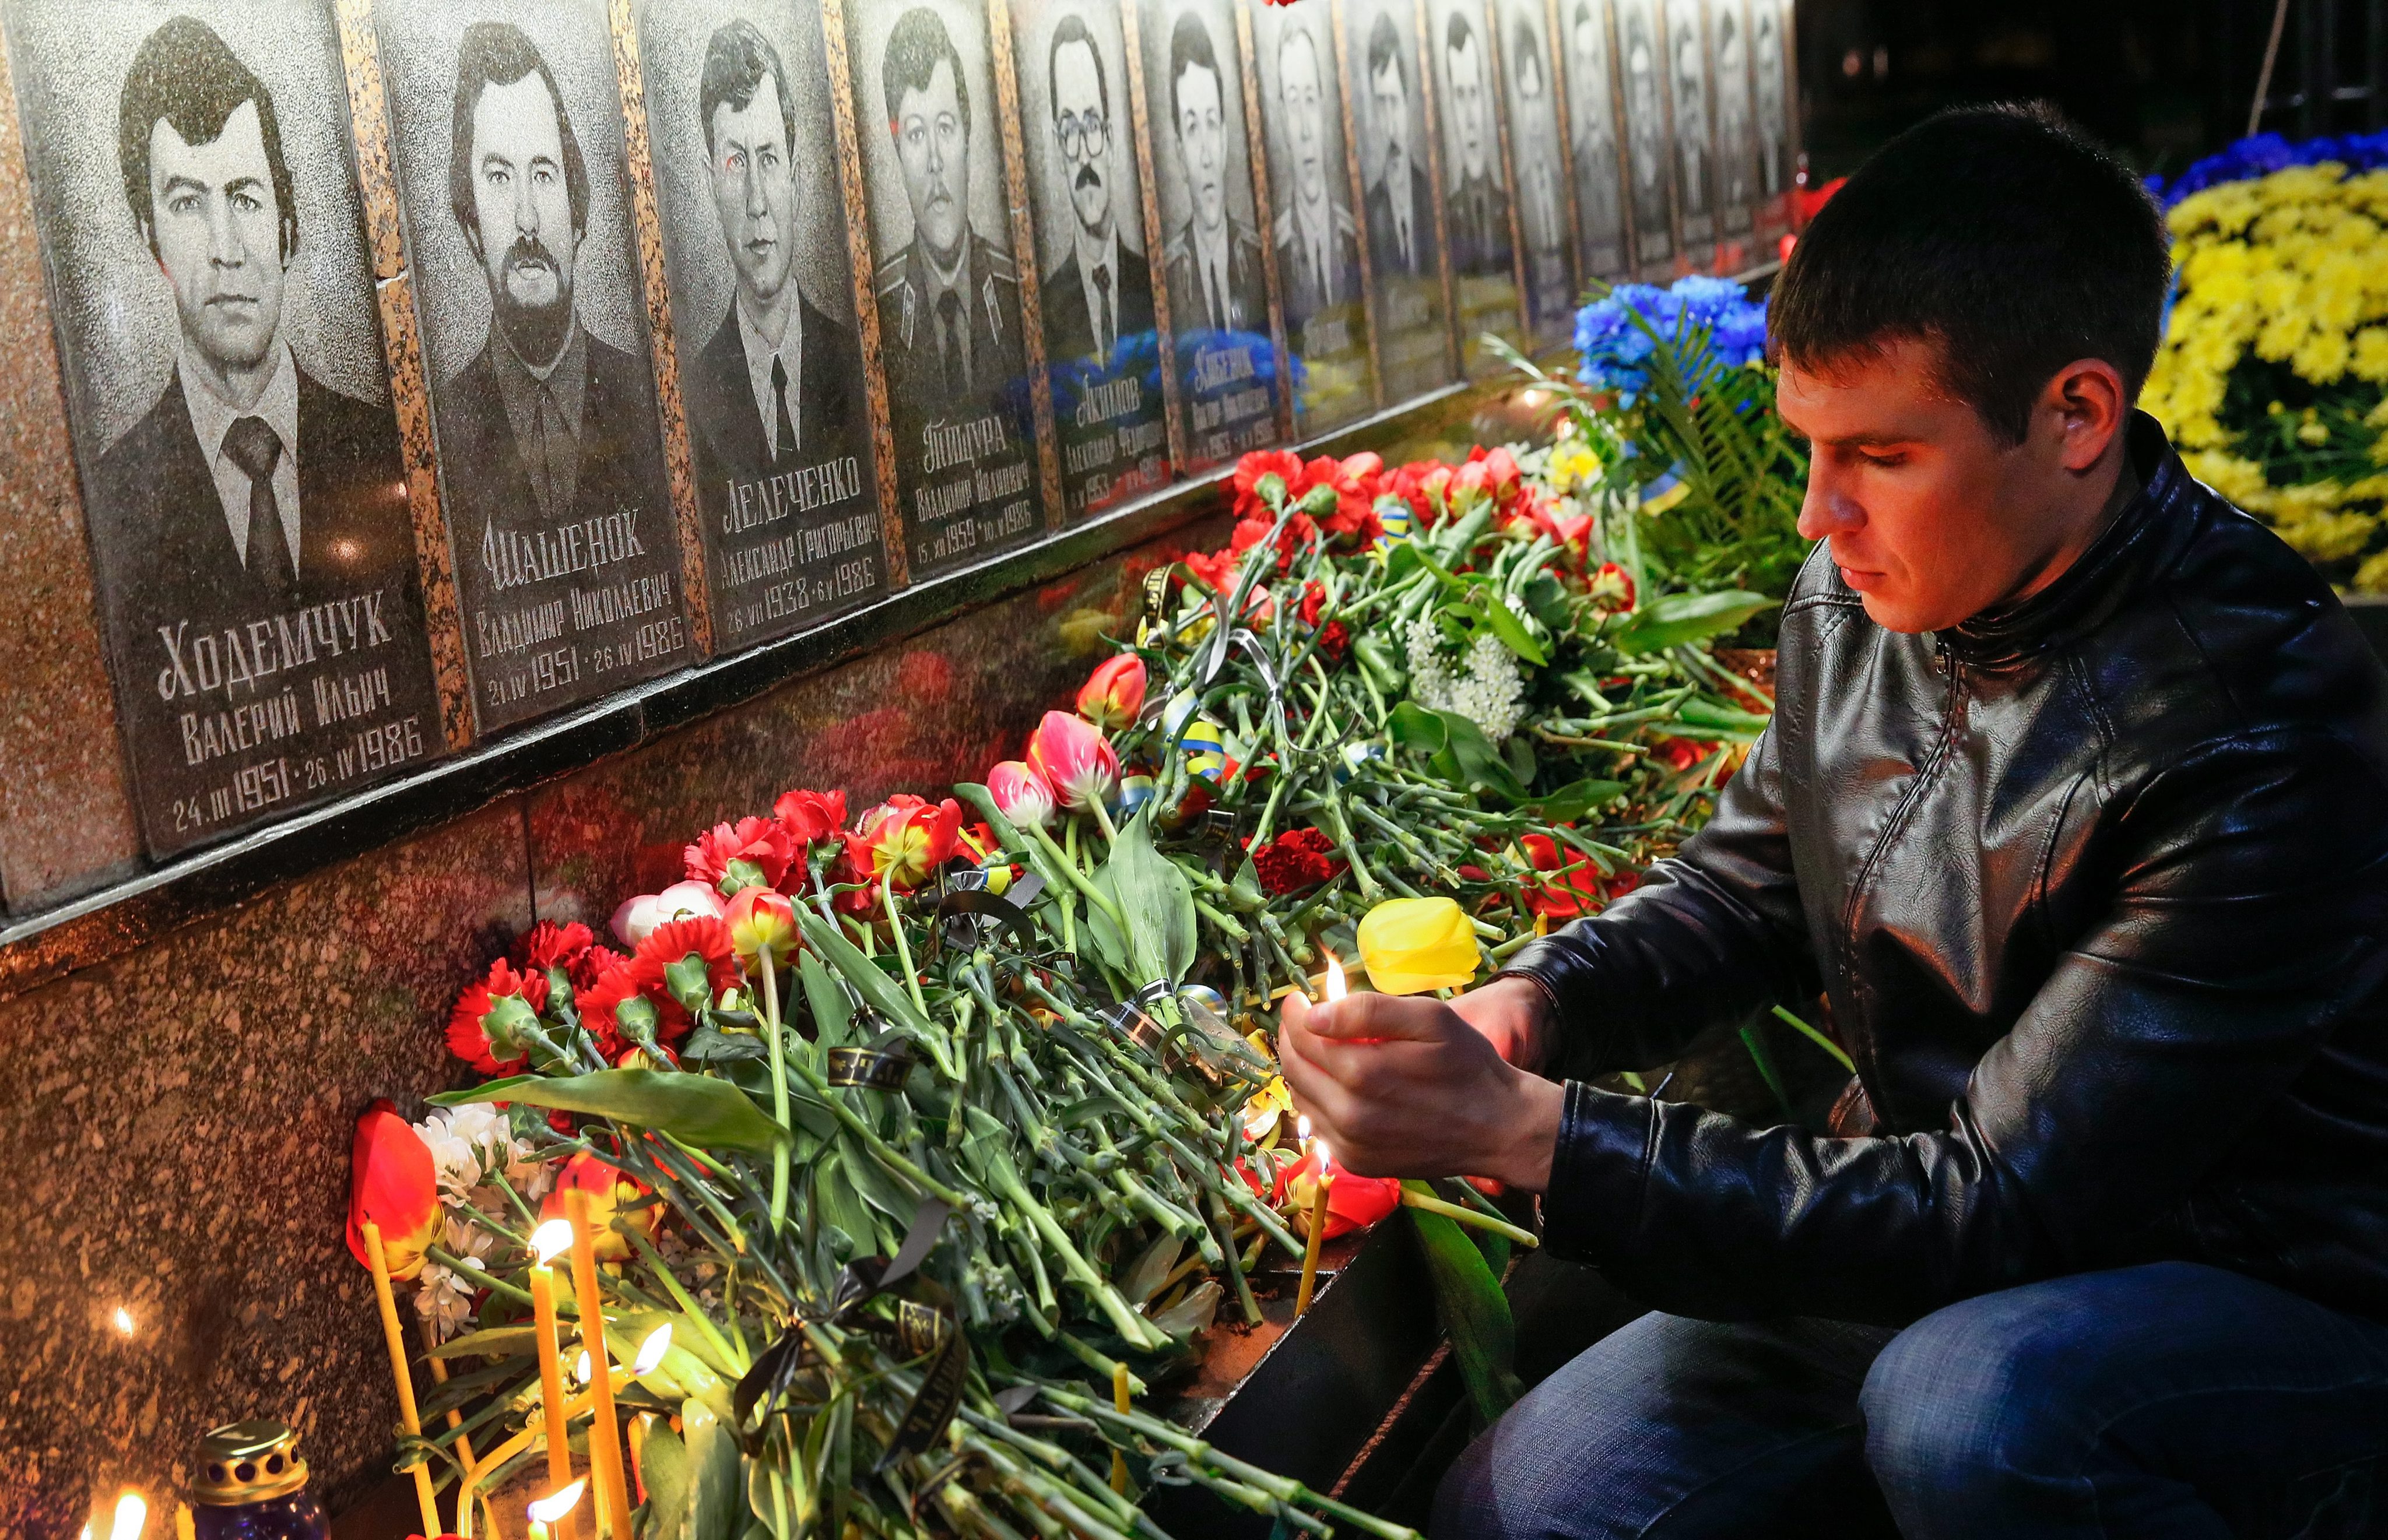 Όταν ο εφιάλτης άγγιξε ευρωπαϊκό έδαφος: Τσερνόμπιλ, 30 χρόνια μετά